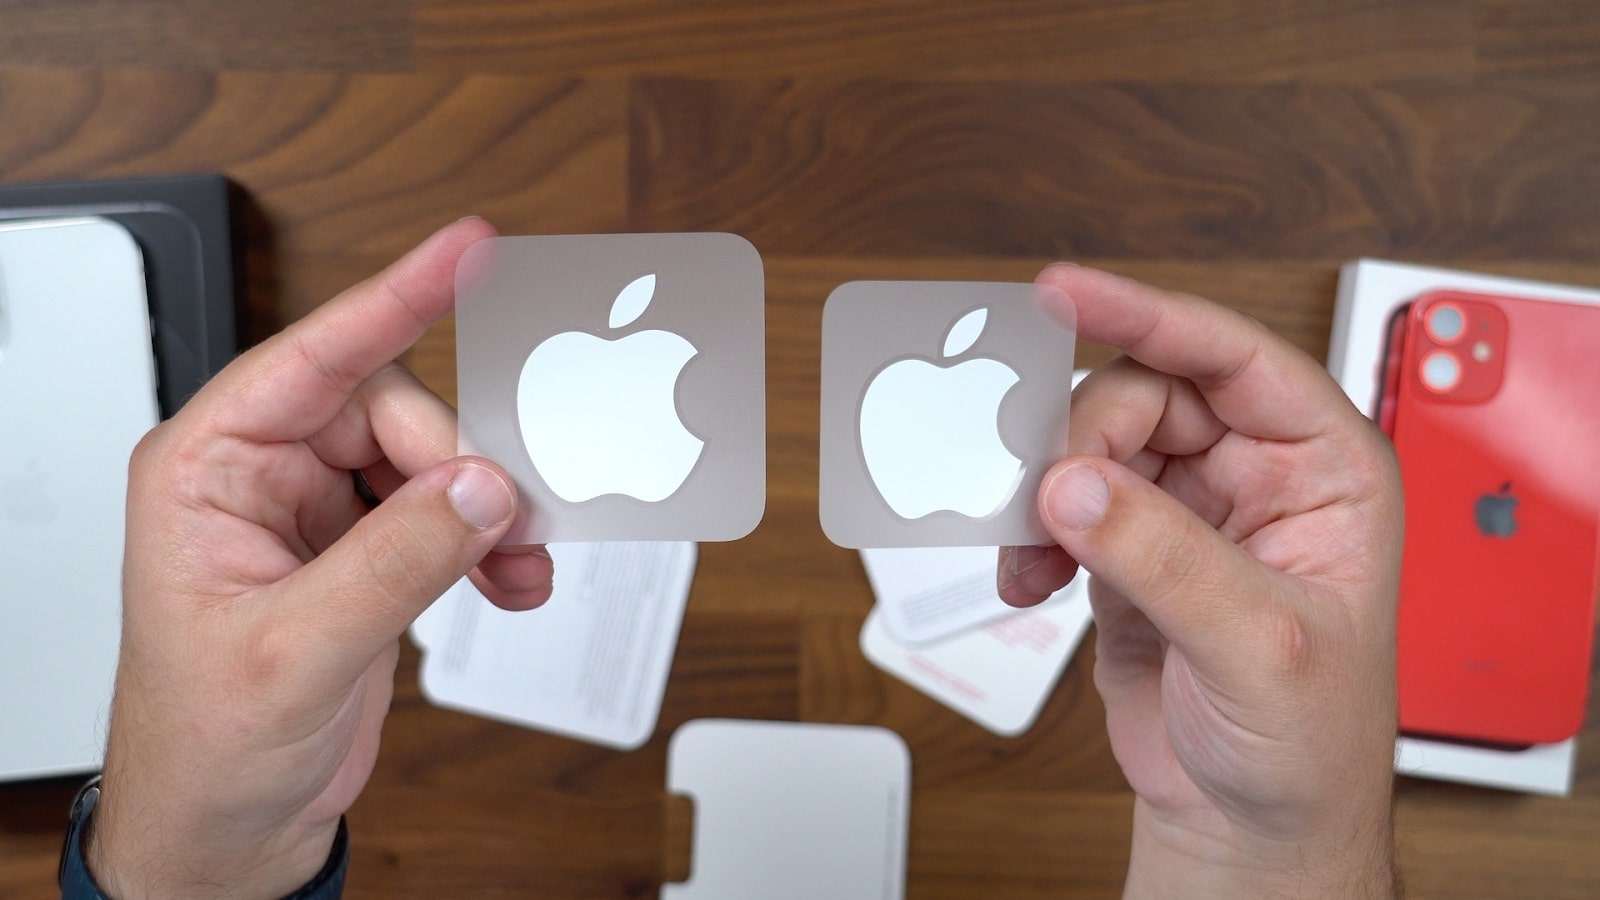 Đây chính là lý do vì sao Apple luôn tặng kèm sticker in hình logo 'táo khuyết' trong hộp iPhone hay iPad